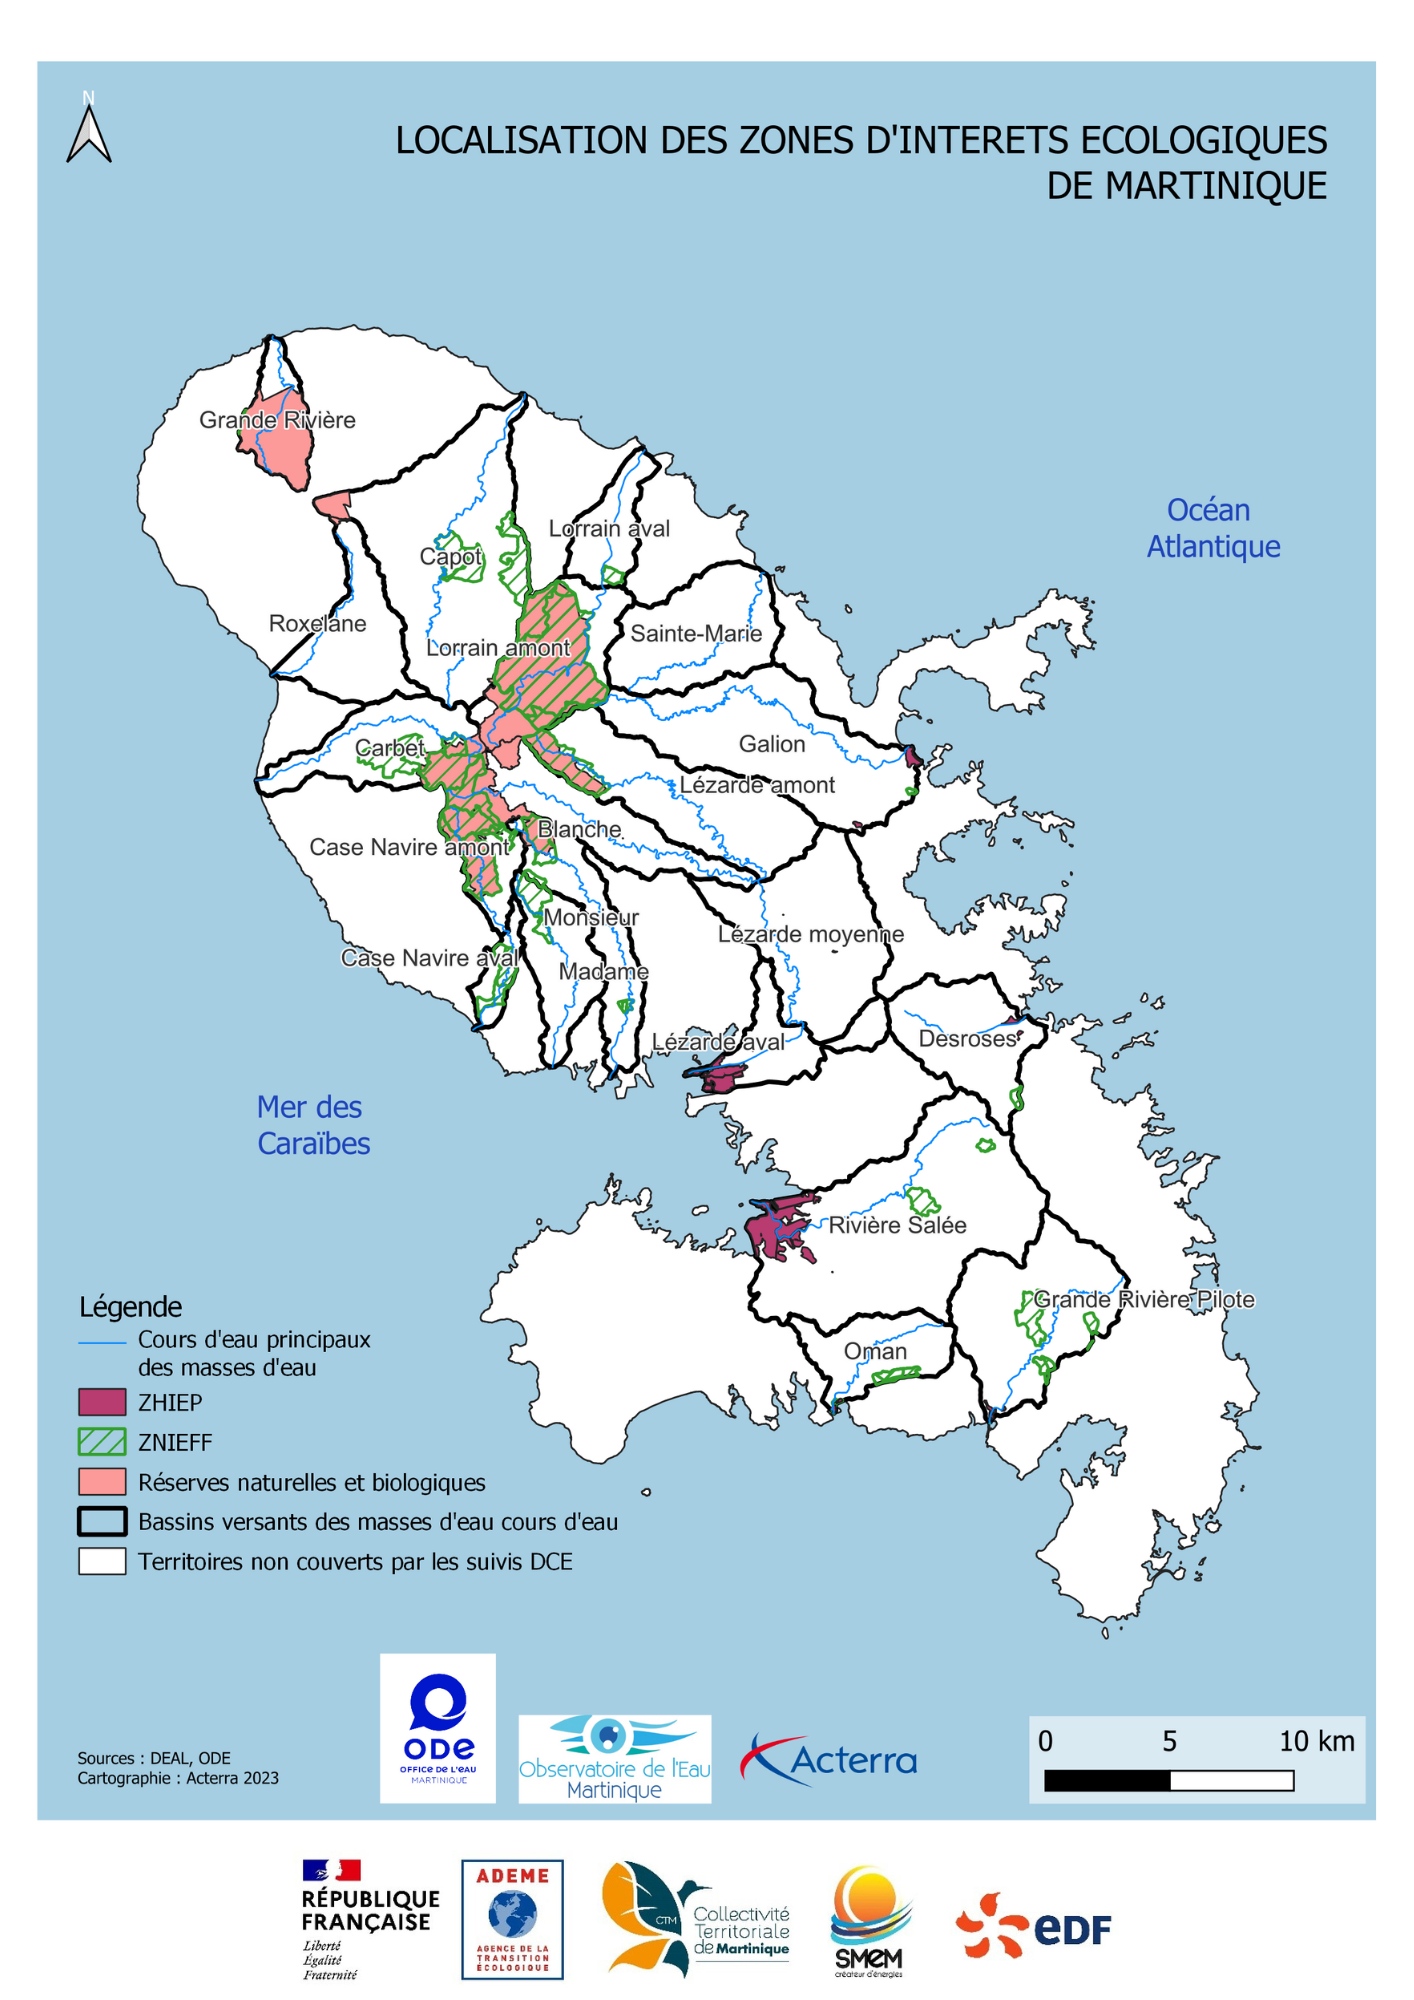 Localisation des zones d'interets écologiques de Martinique